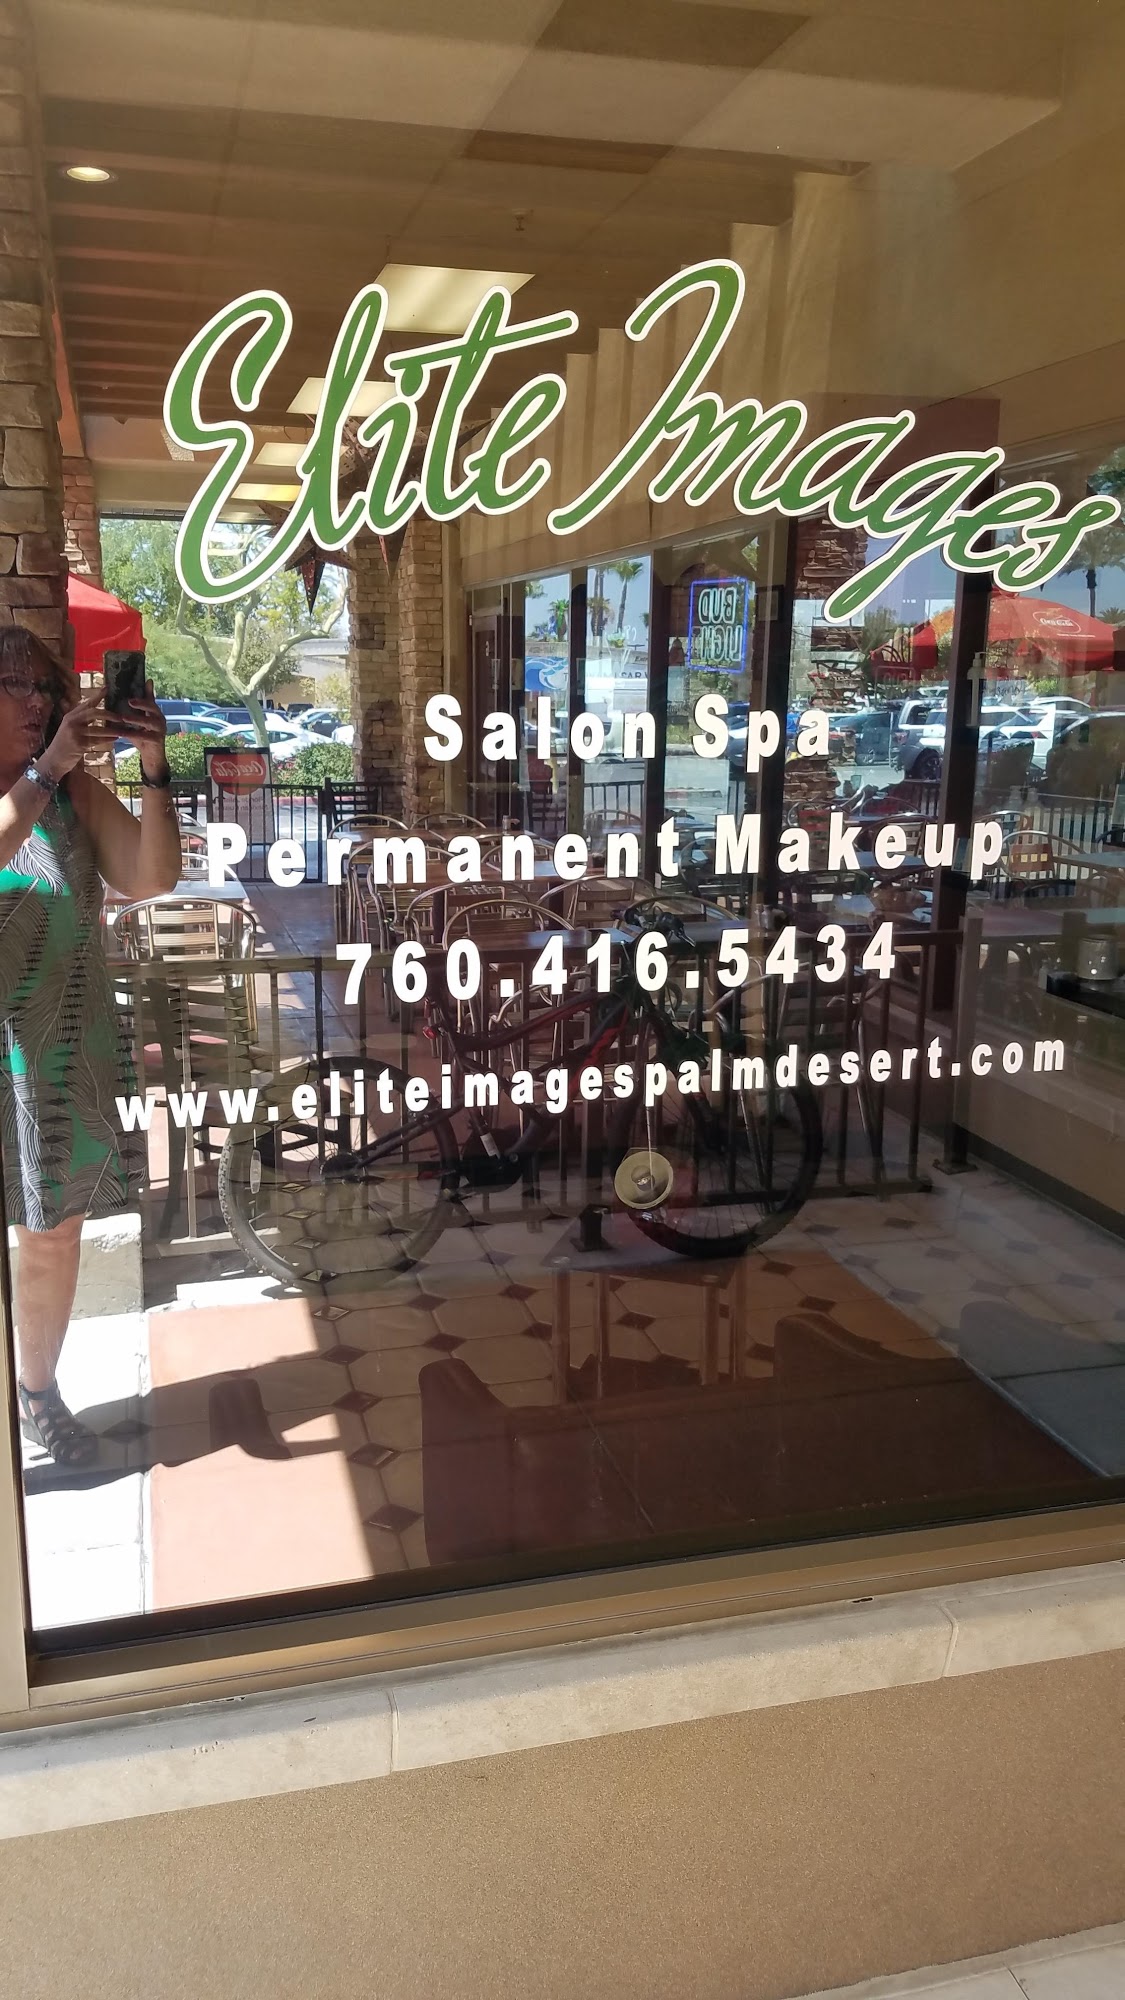 Elite Images Permanent Makeup Salon & Spa Services